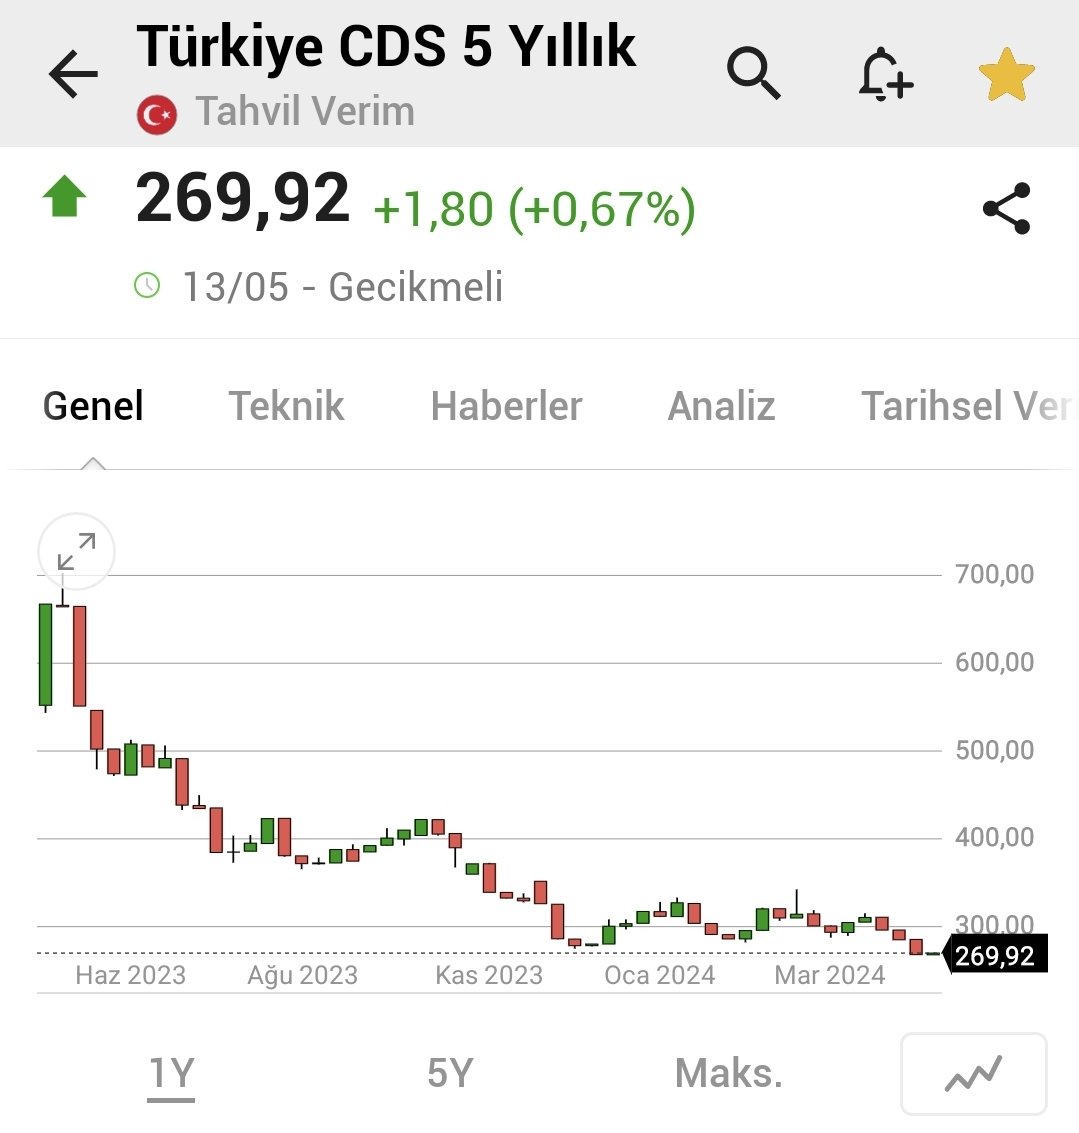 @dcukran Son bir yılda Turkiye CDS i 800 lerden 250 lere geldi. Eurobond a CDS yüksekten girilip aşağı geldiğinde çıkılarak kazanç sağlandığından ve 250 dip seviye görüldüğünden çıkışların yüksek olması gayet normal. CDS yükselirse tekrar girişler olacaktır.